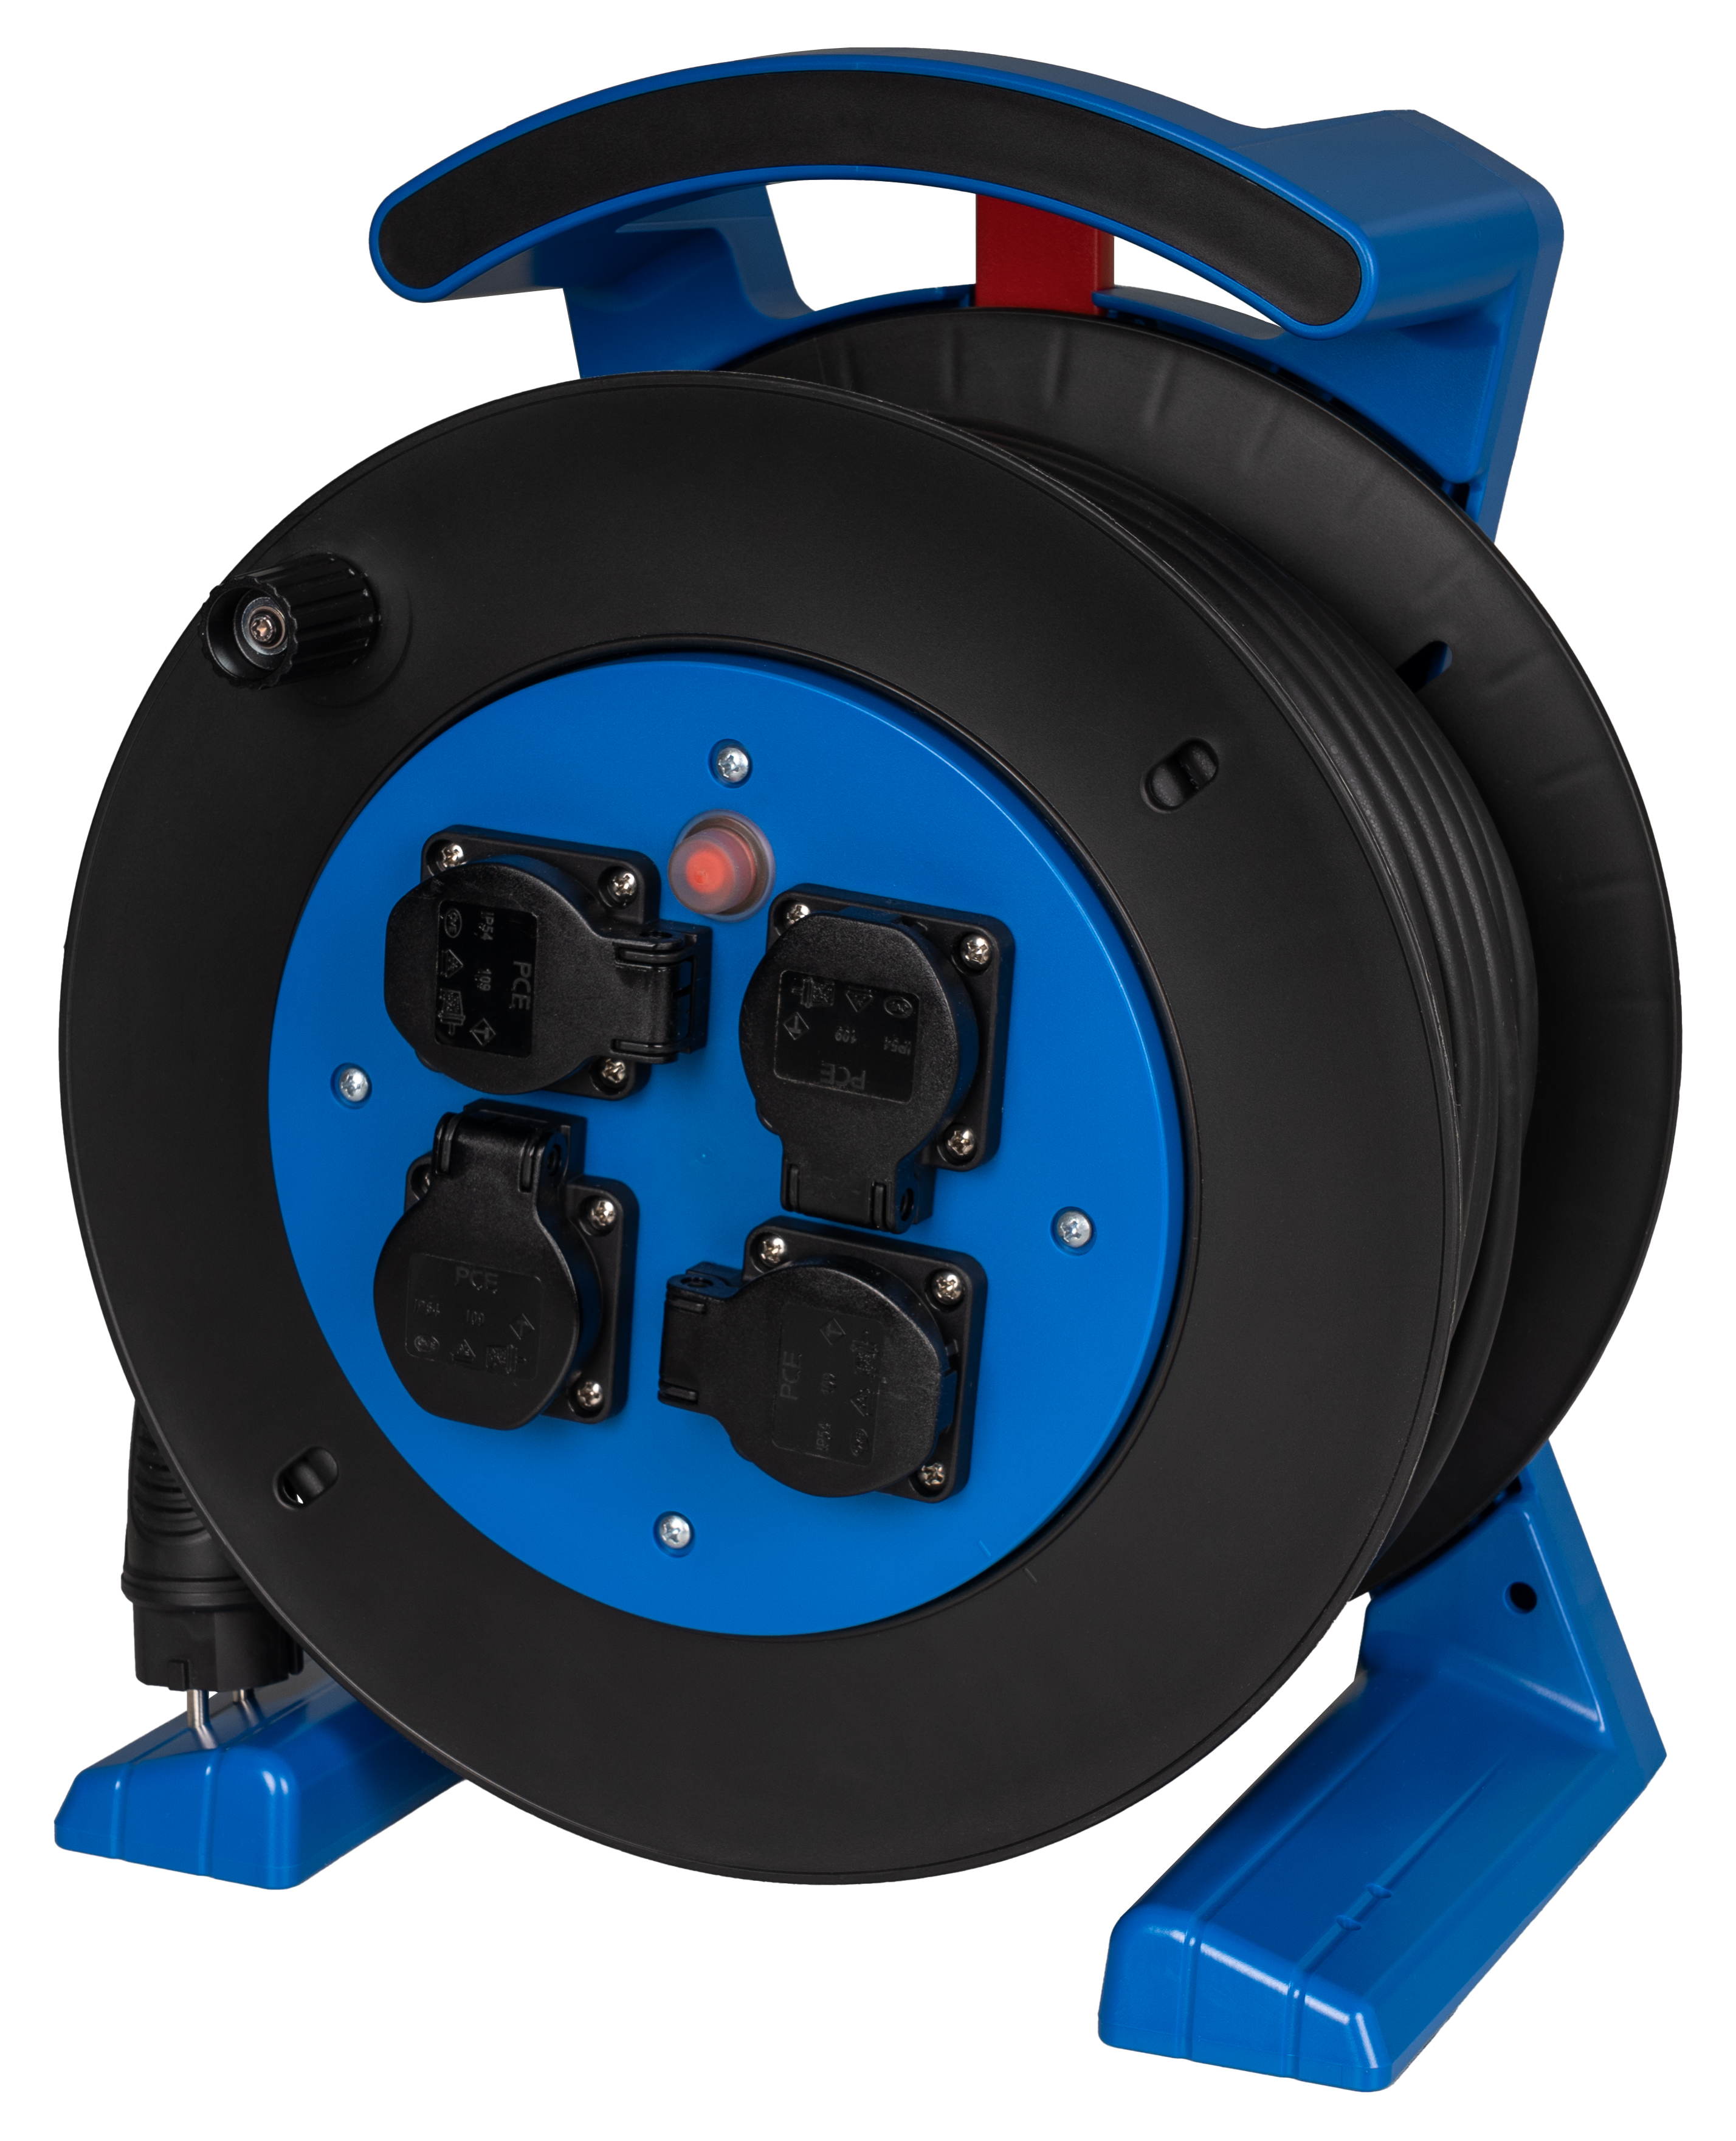 Kabeltrommel blau-schwarz, 4 x Schutzkontakt-Steckdose, H07RN-F 3 G 1,5 mm², 40 m JUMBO L 2.0